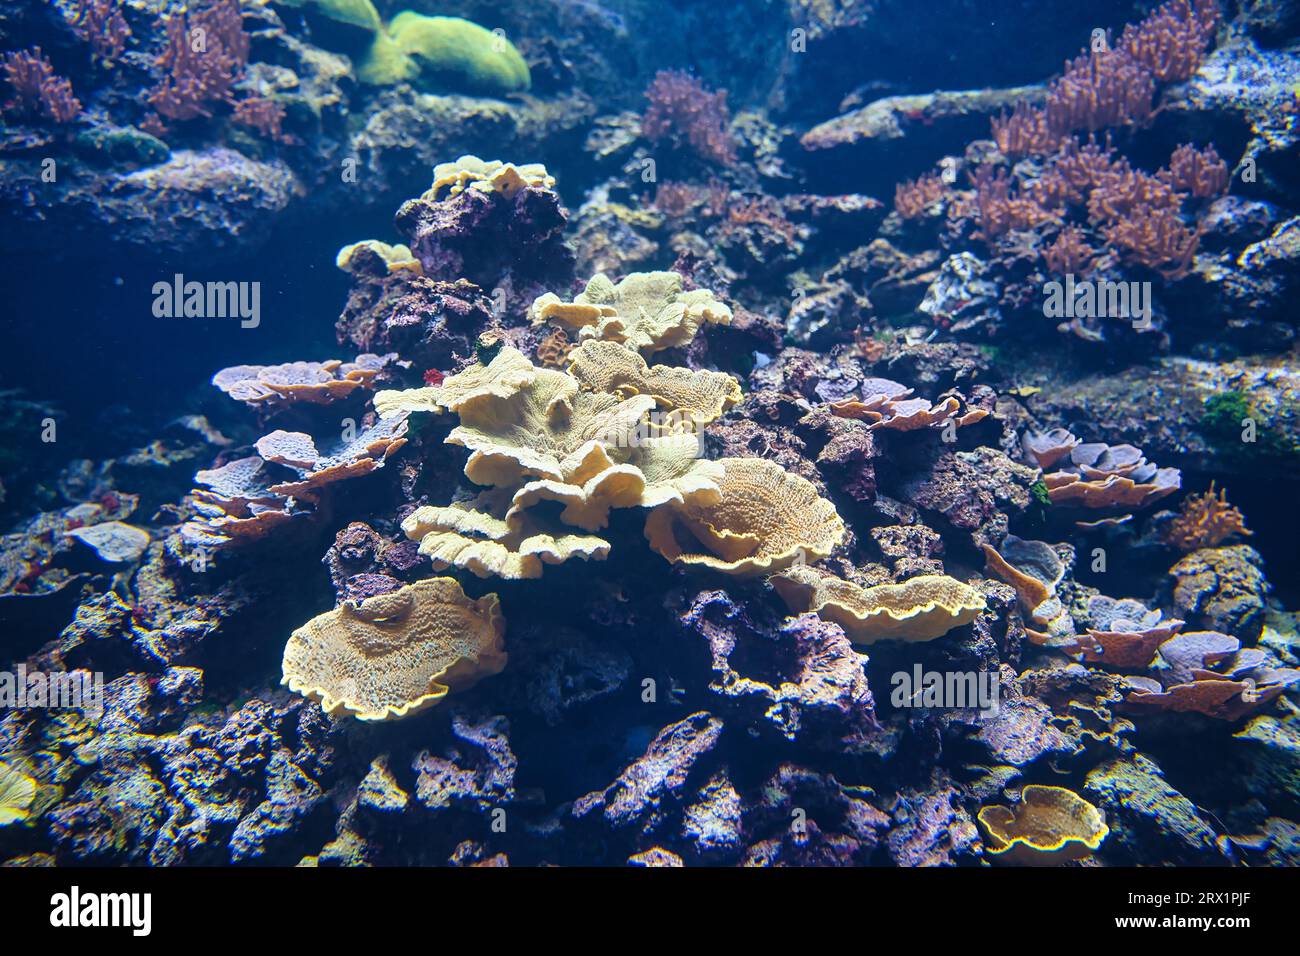 À l’Aquarium de Paris, vous découvrirez les plus grands bâtisseurs vivants de notre planète. Ce sont des coraux qui construisent des récifs. Animaux primitifs et coloniaux Banque D'Images